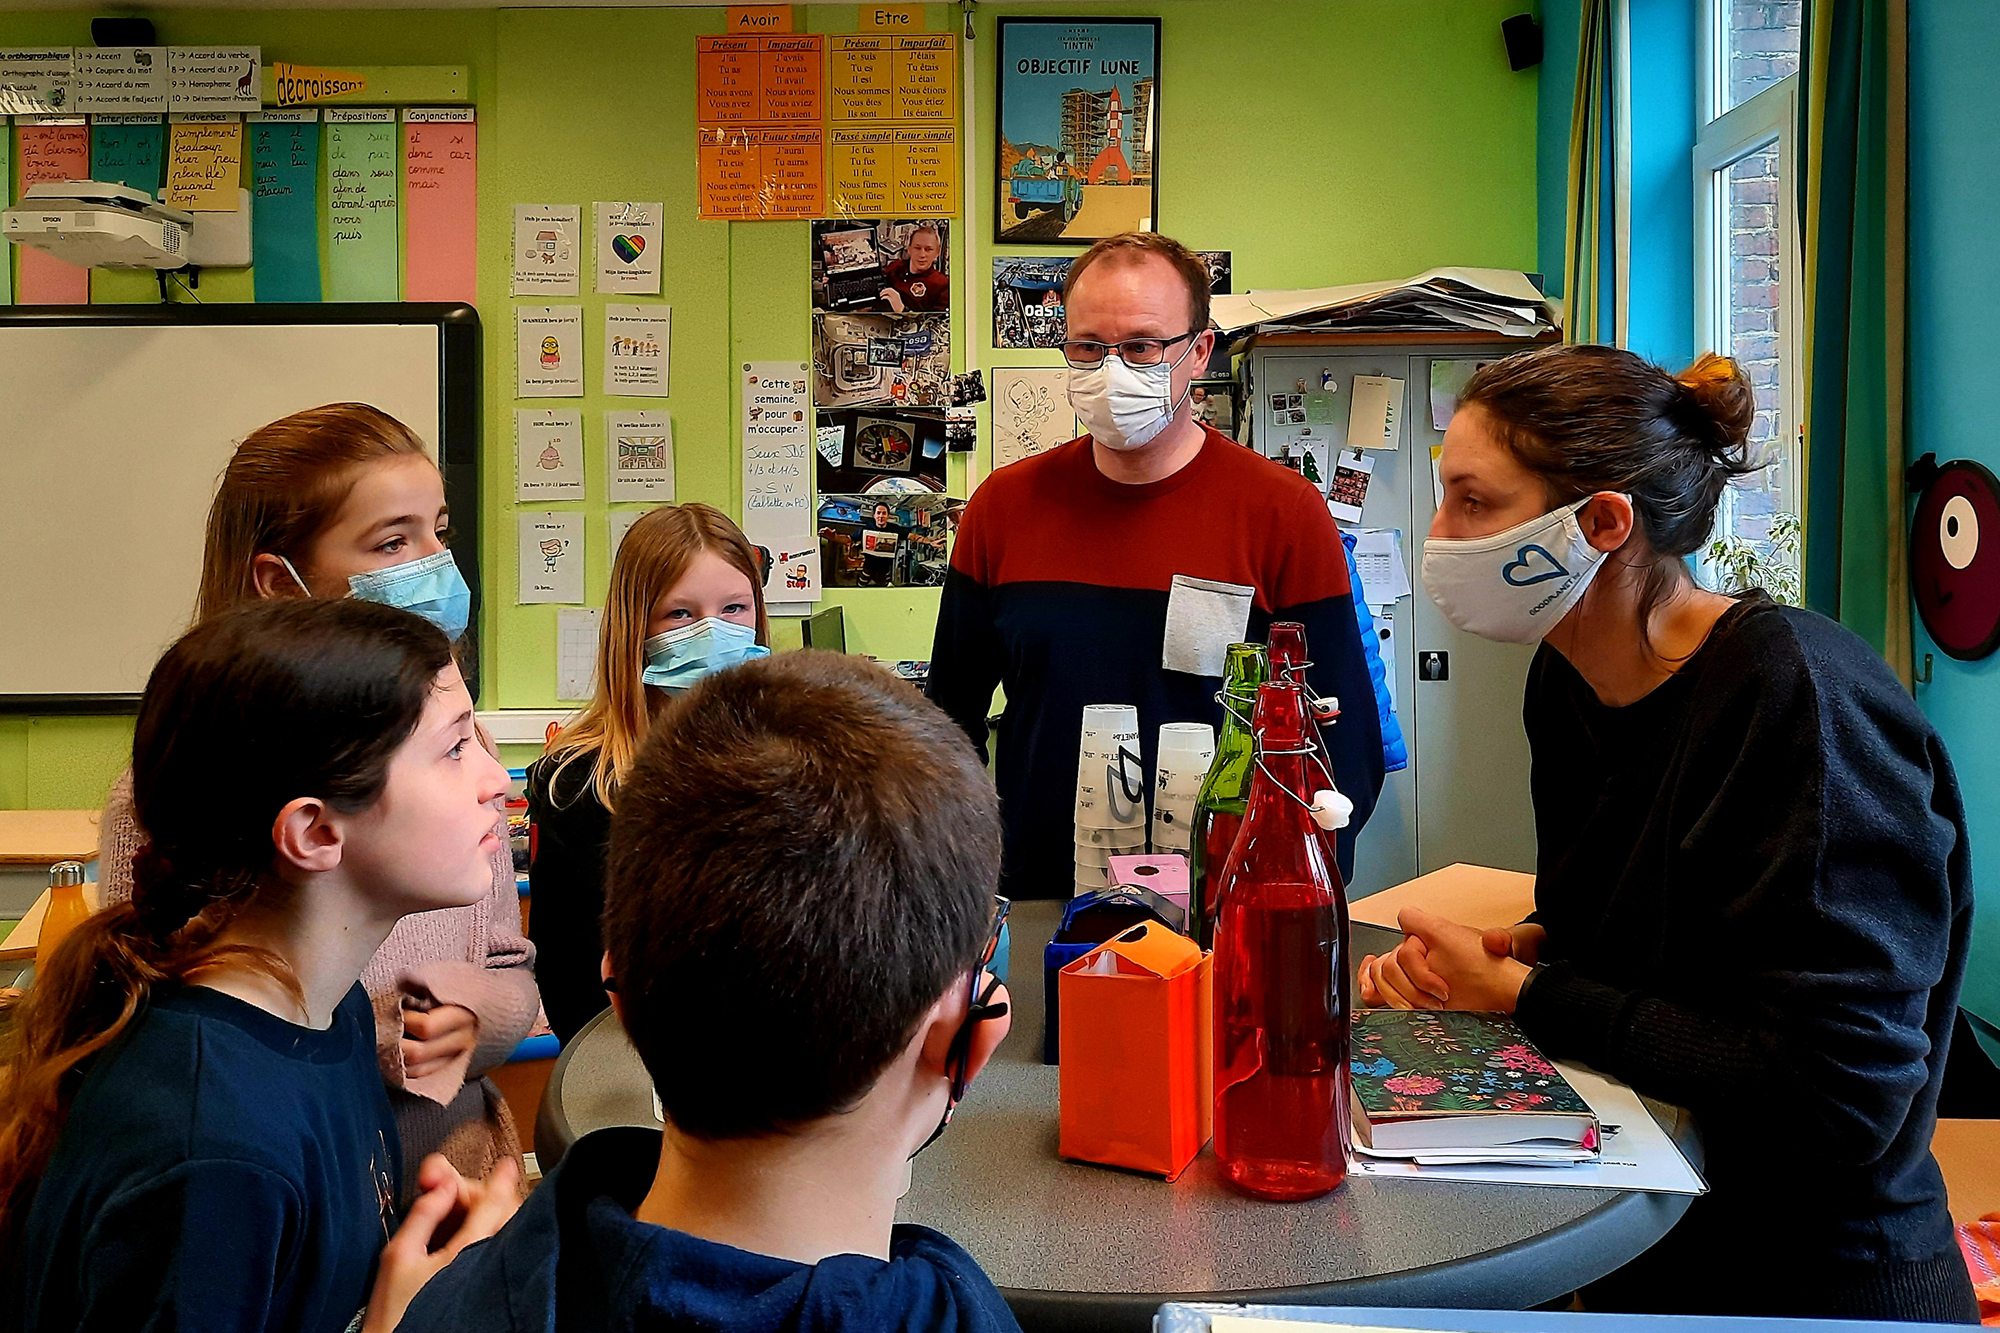 Die Umweltschutzorganisation "Good Planet" arbeitet viel mit Schulen zusammen, wie hier in einer Primarschule in Namur (Archivbild: Magali Veronesi/Belga)